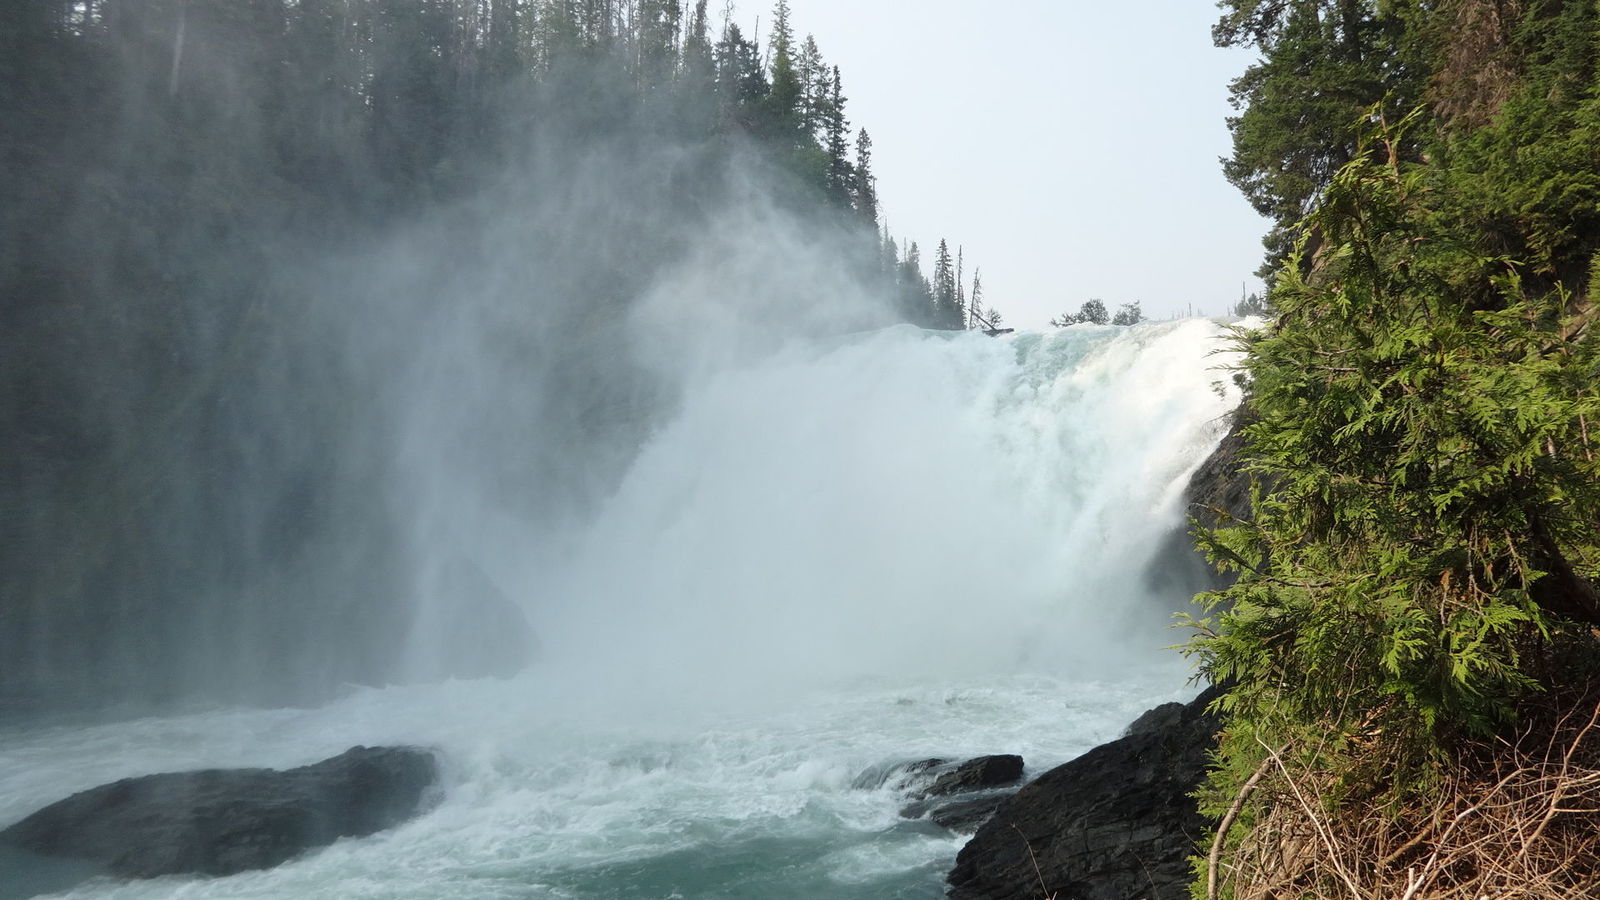 Cariboo Falls